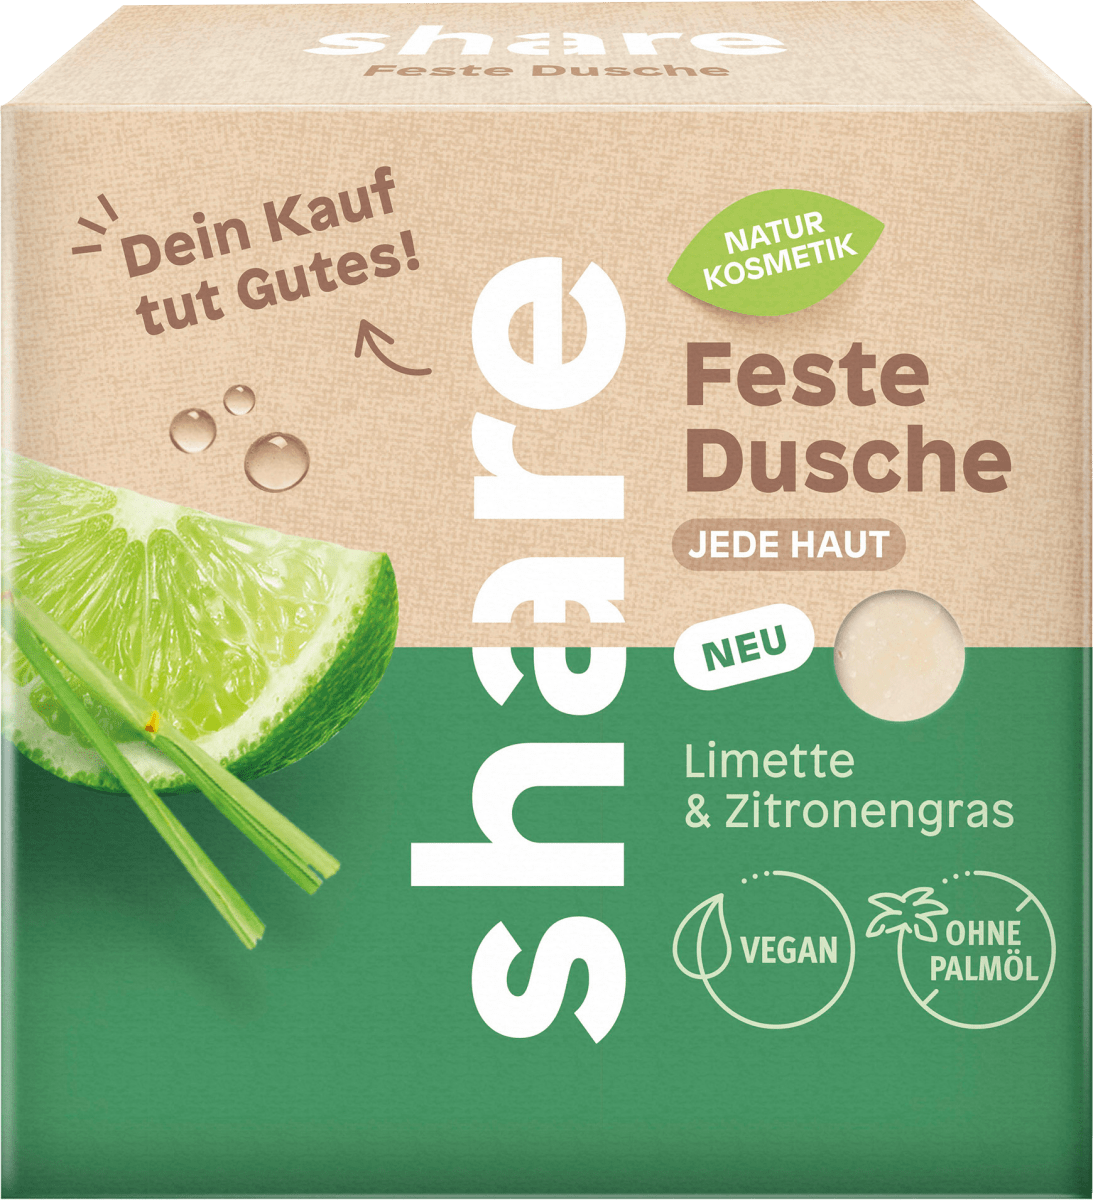 share Feste Dusche Limette & Zitronengras, 60 g dauerhaft online kaufen